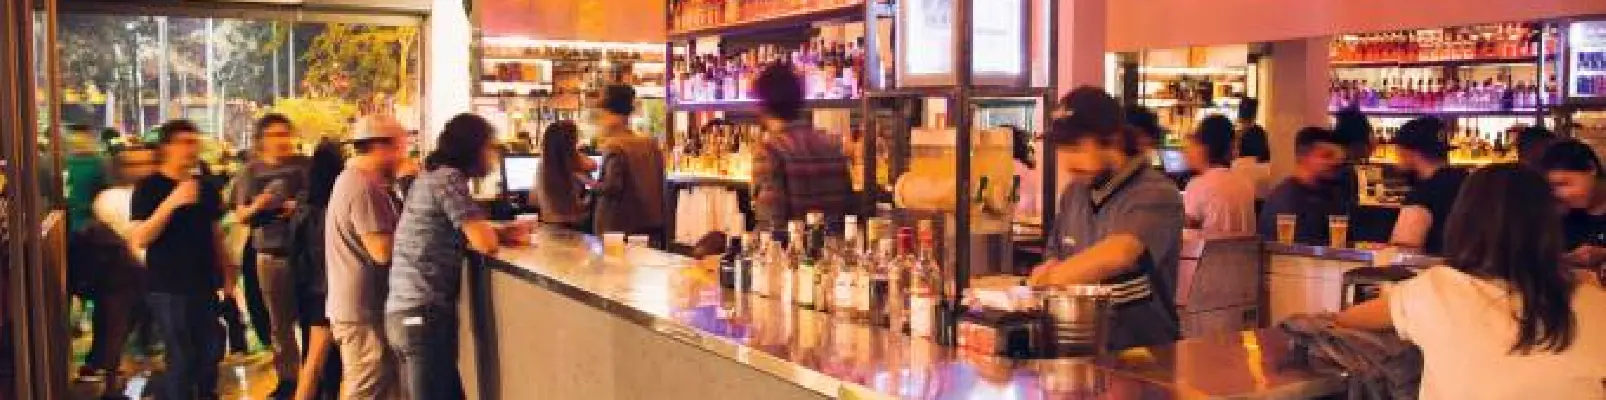 Dicas para reduzir a rotatividade em bares e restaurantes